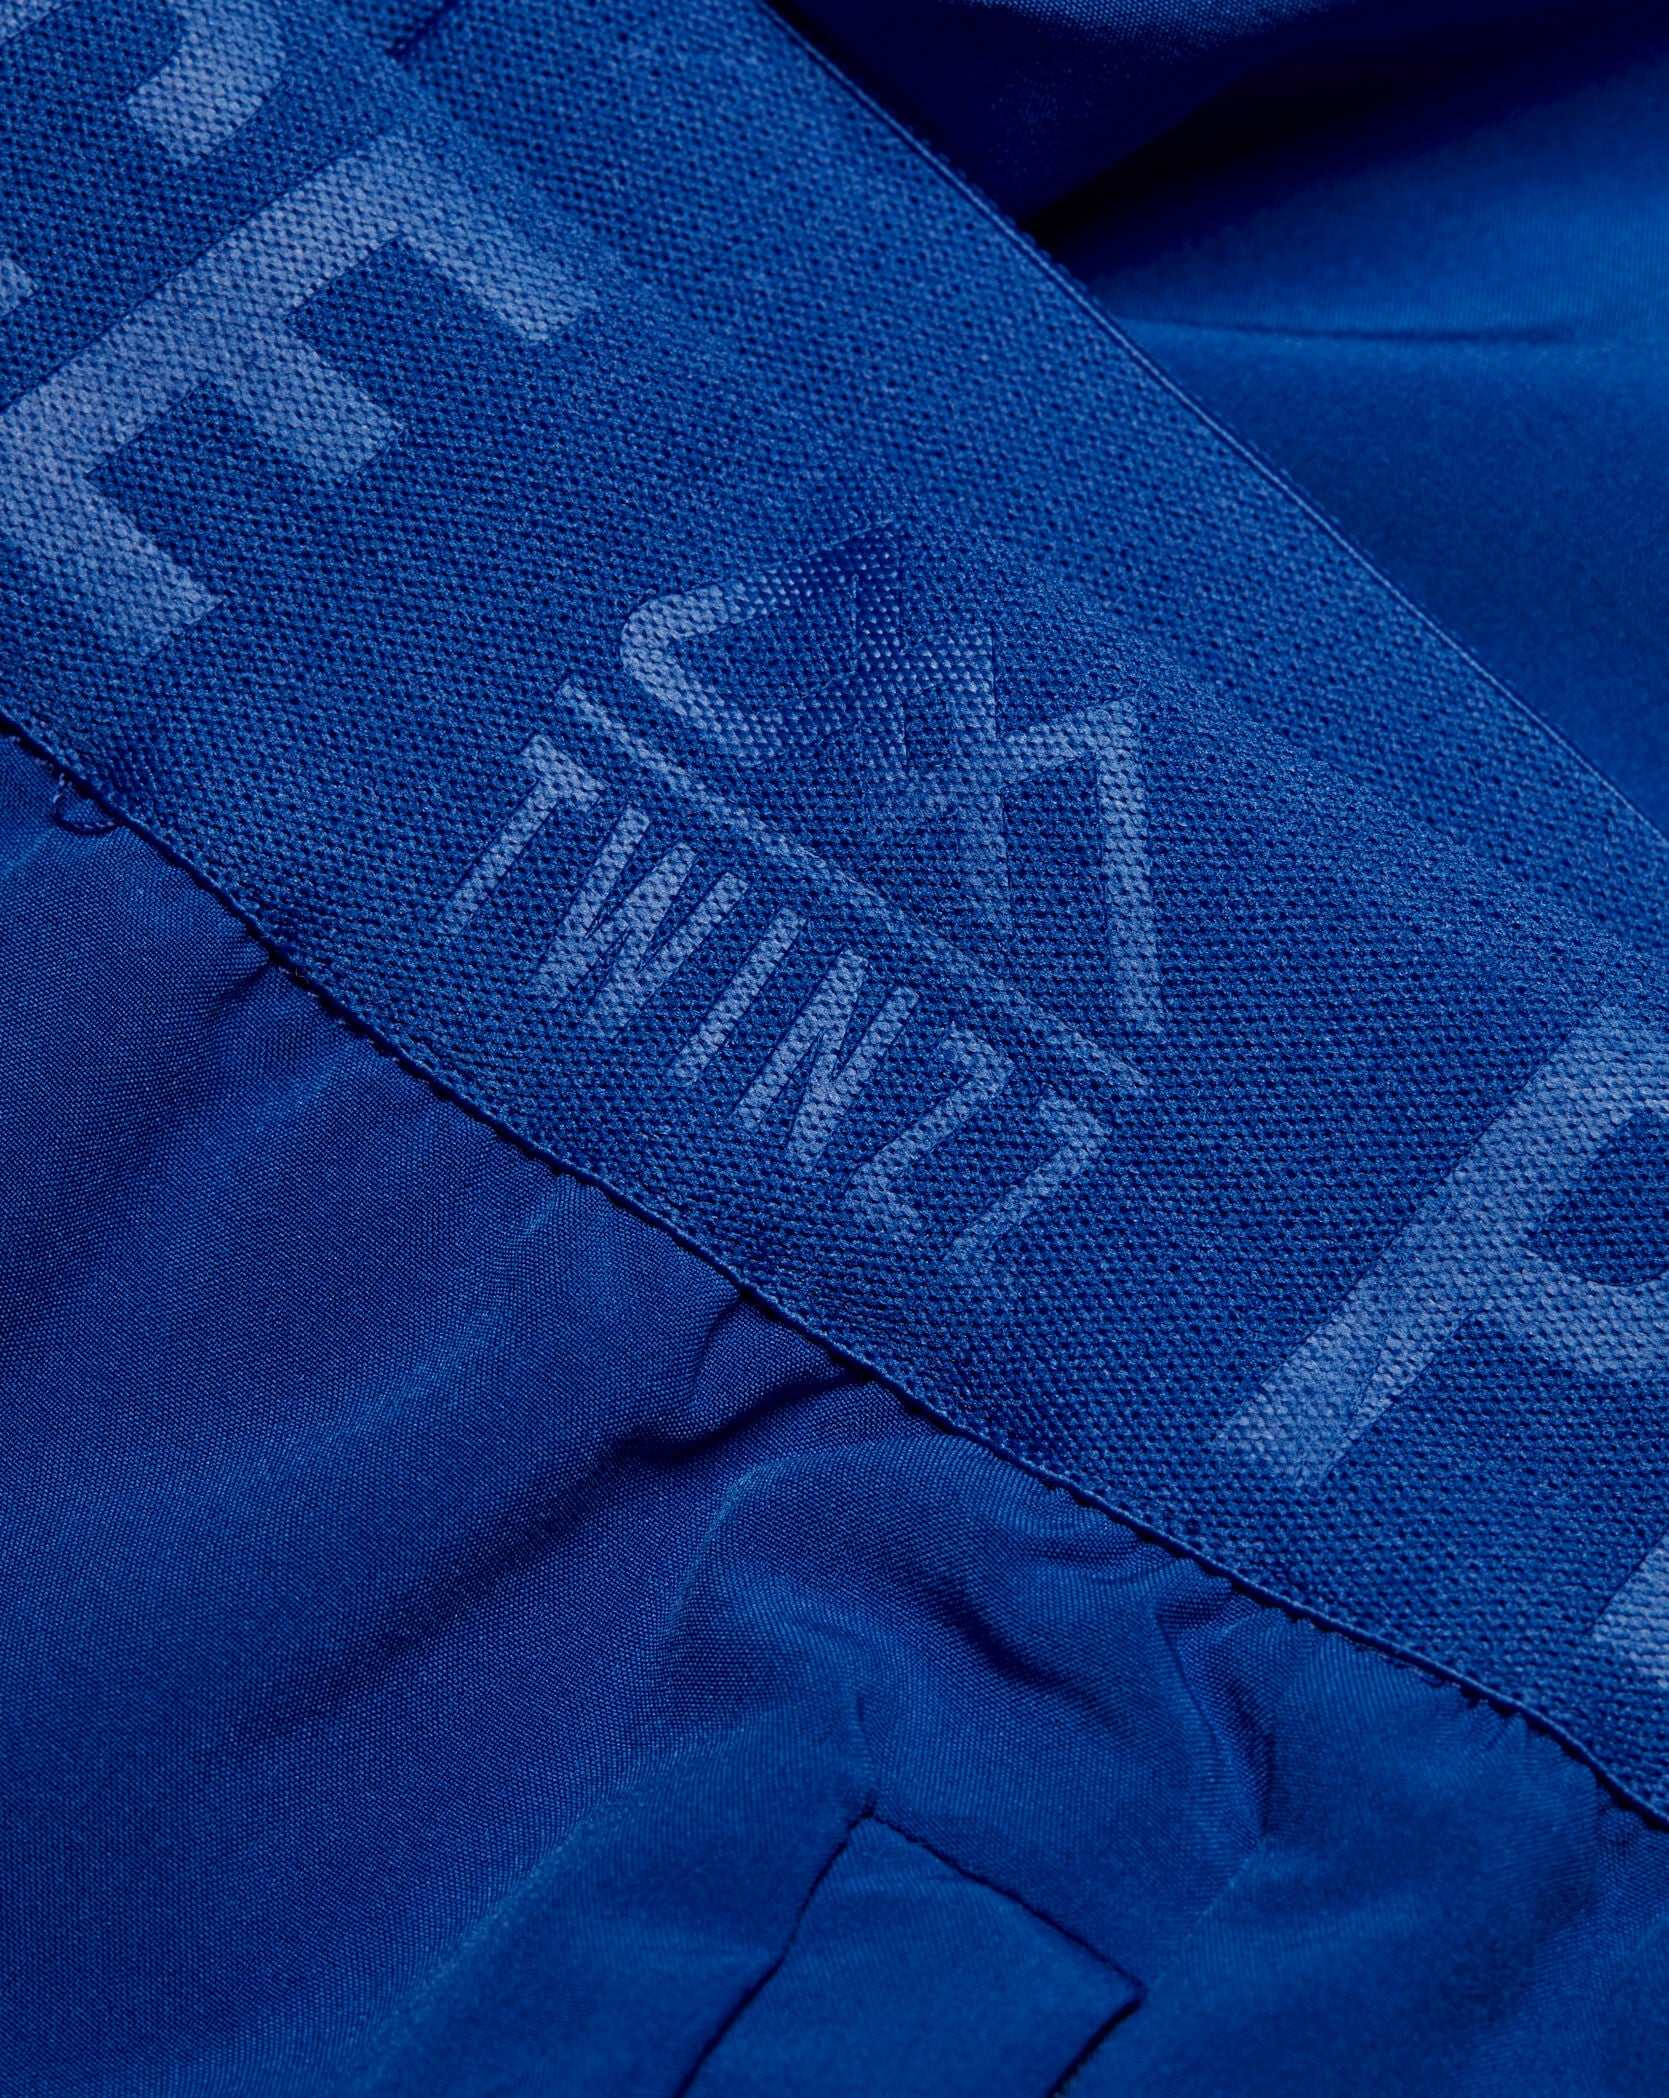 Twinzz blue active shorts waist